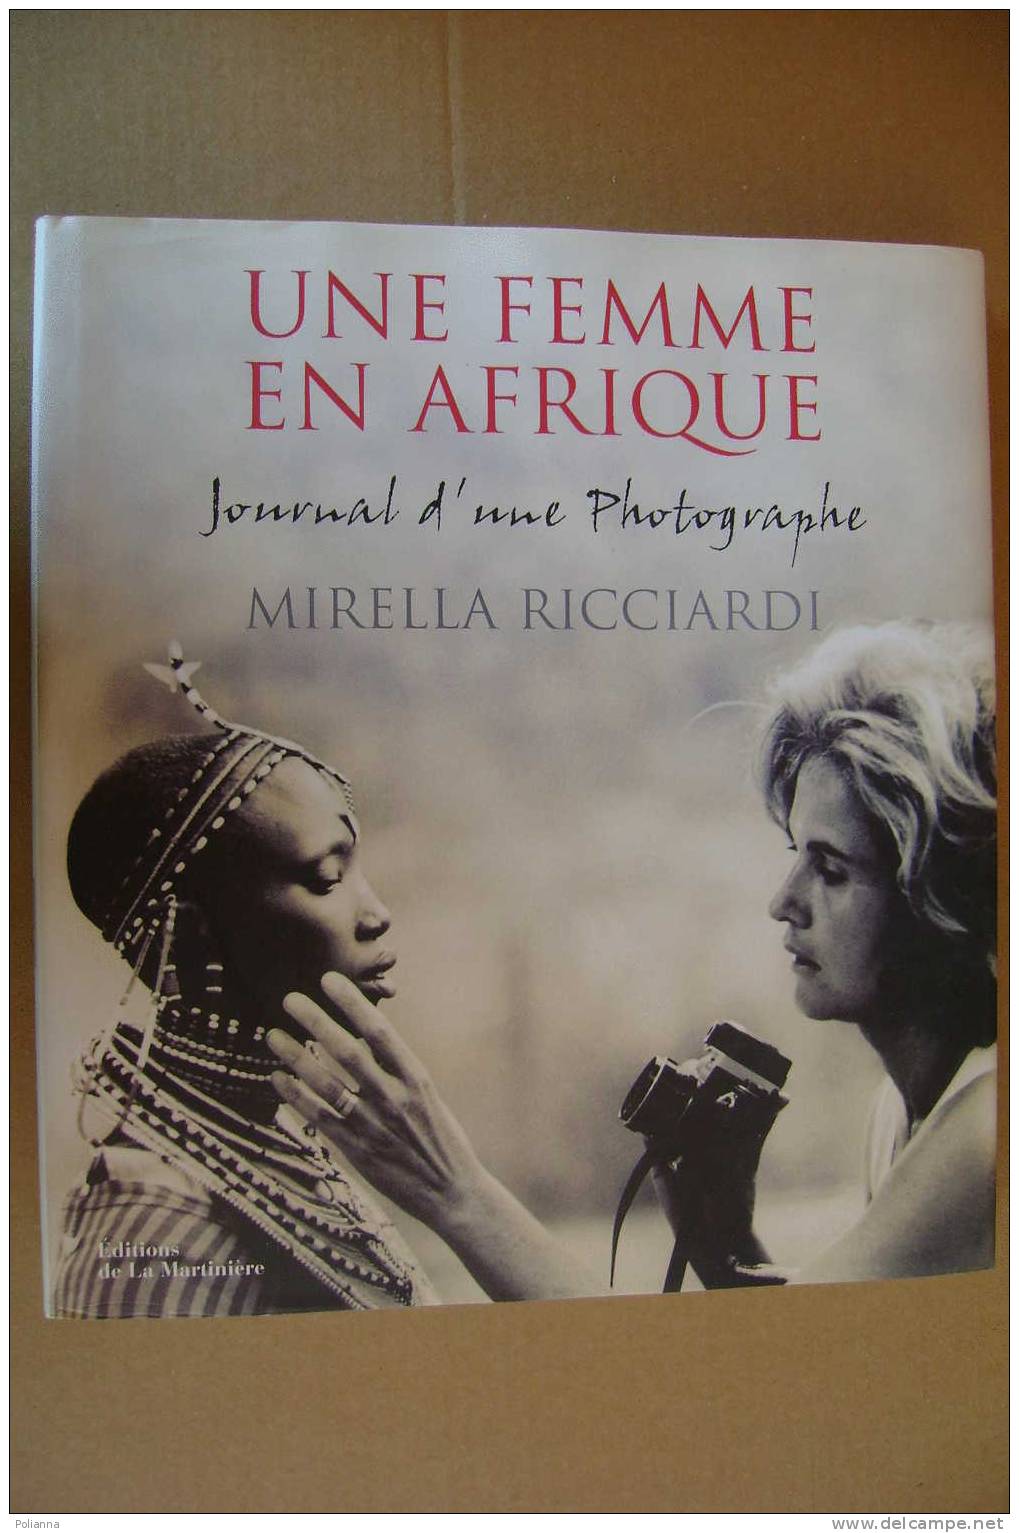 PAL/1 UNE FEMME EN AFRIQUE - MIRELLA RICCIARDI La Martiniere 2001 / Fotografia/DONNA - Pictures